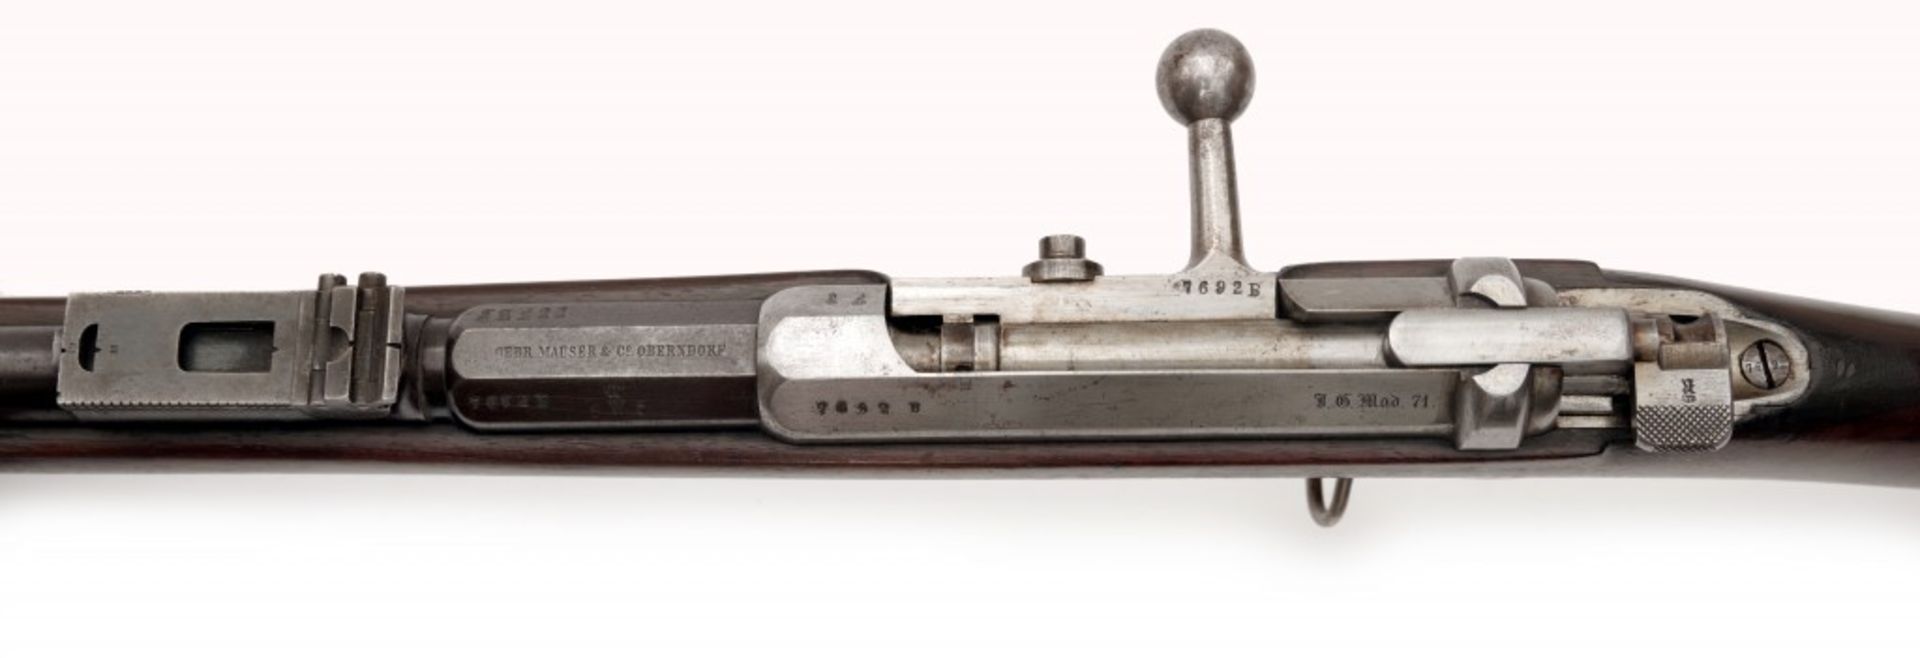 Infanteriegewehr M 1871, Mauser - Image 7 of 7